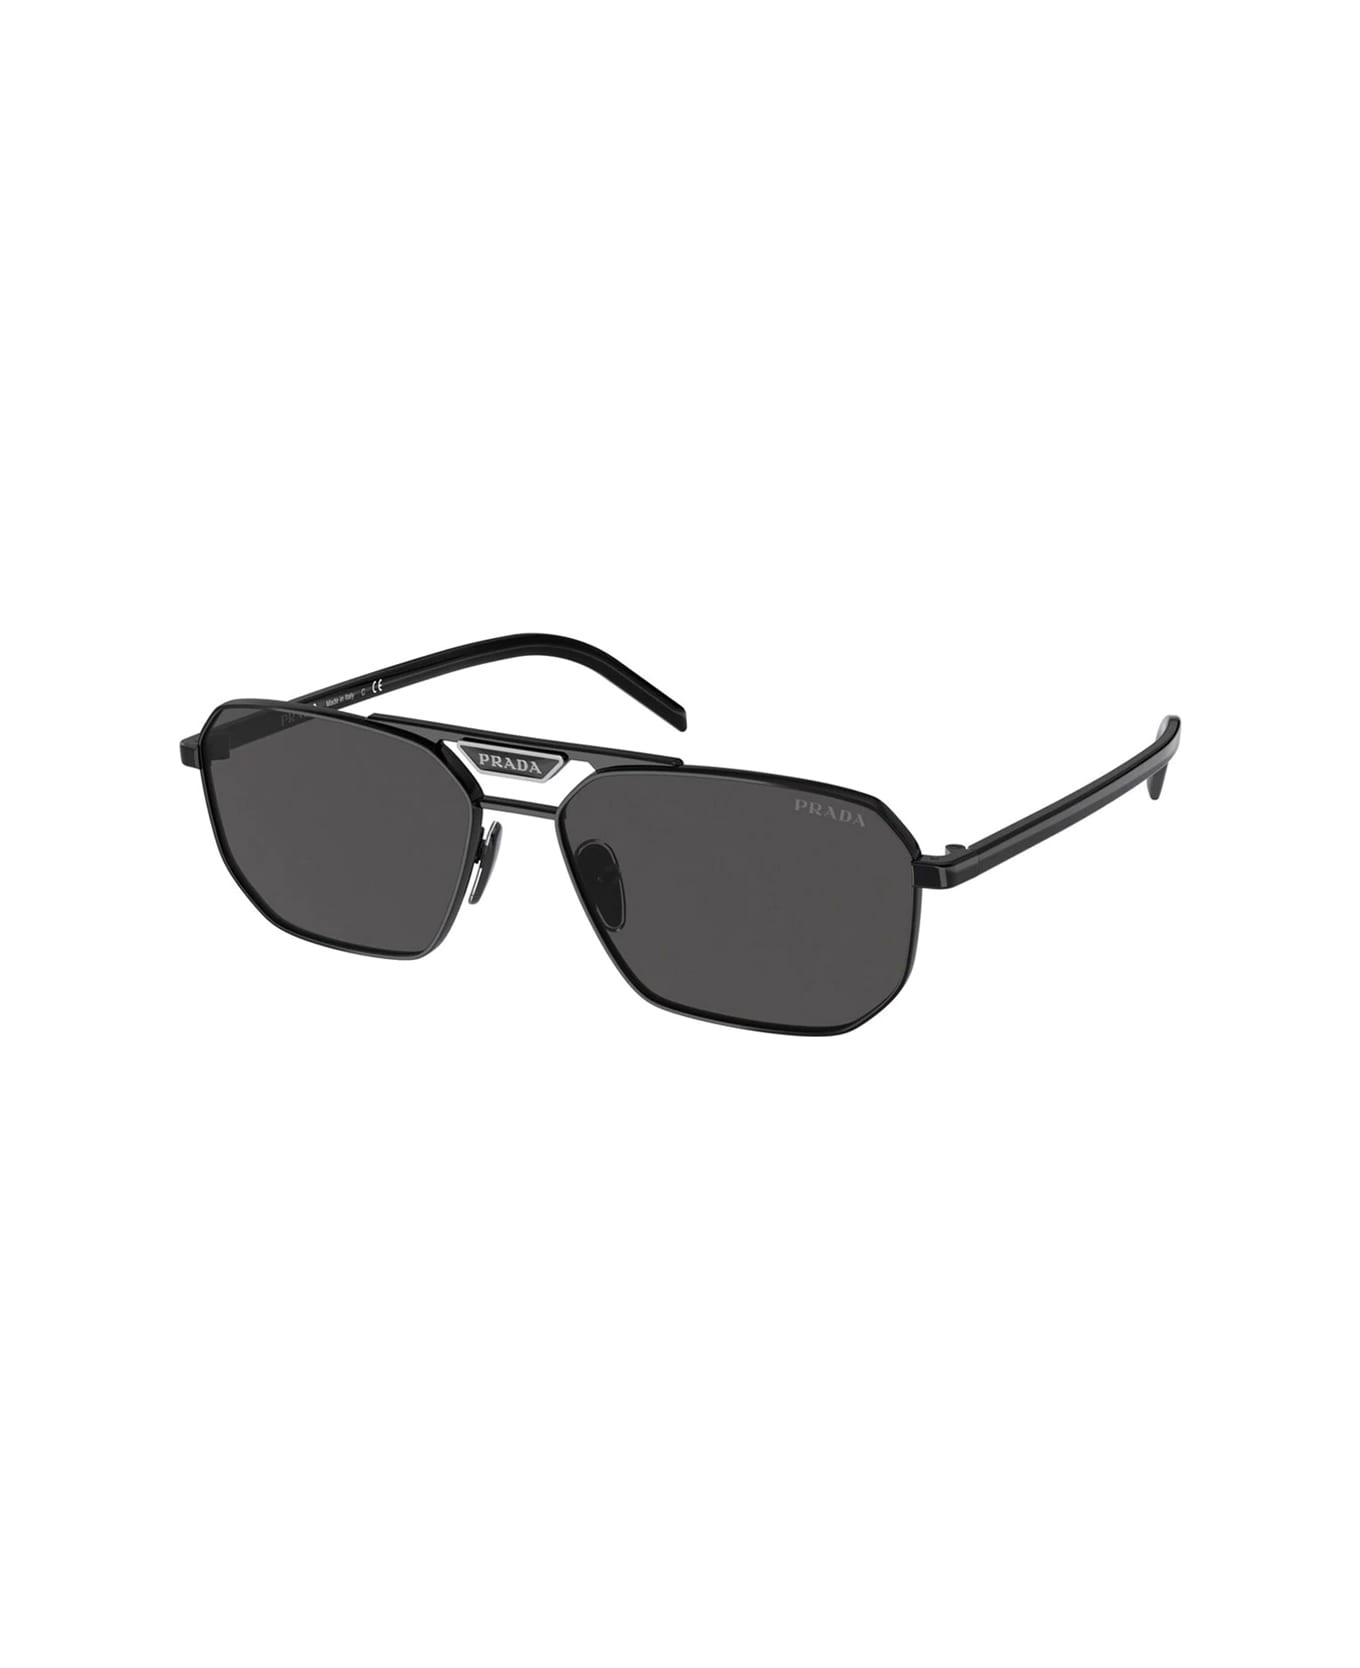 Prada Eyewear Pr 58ys 1ab5s0 Sunglasses - Nero